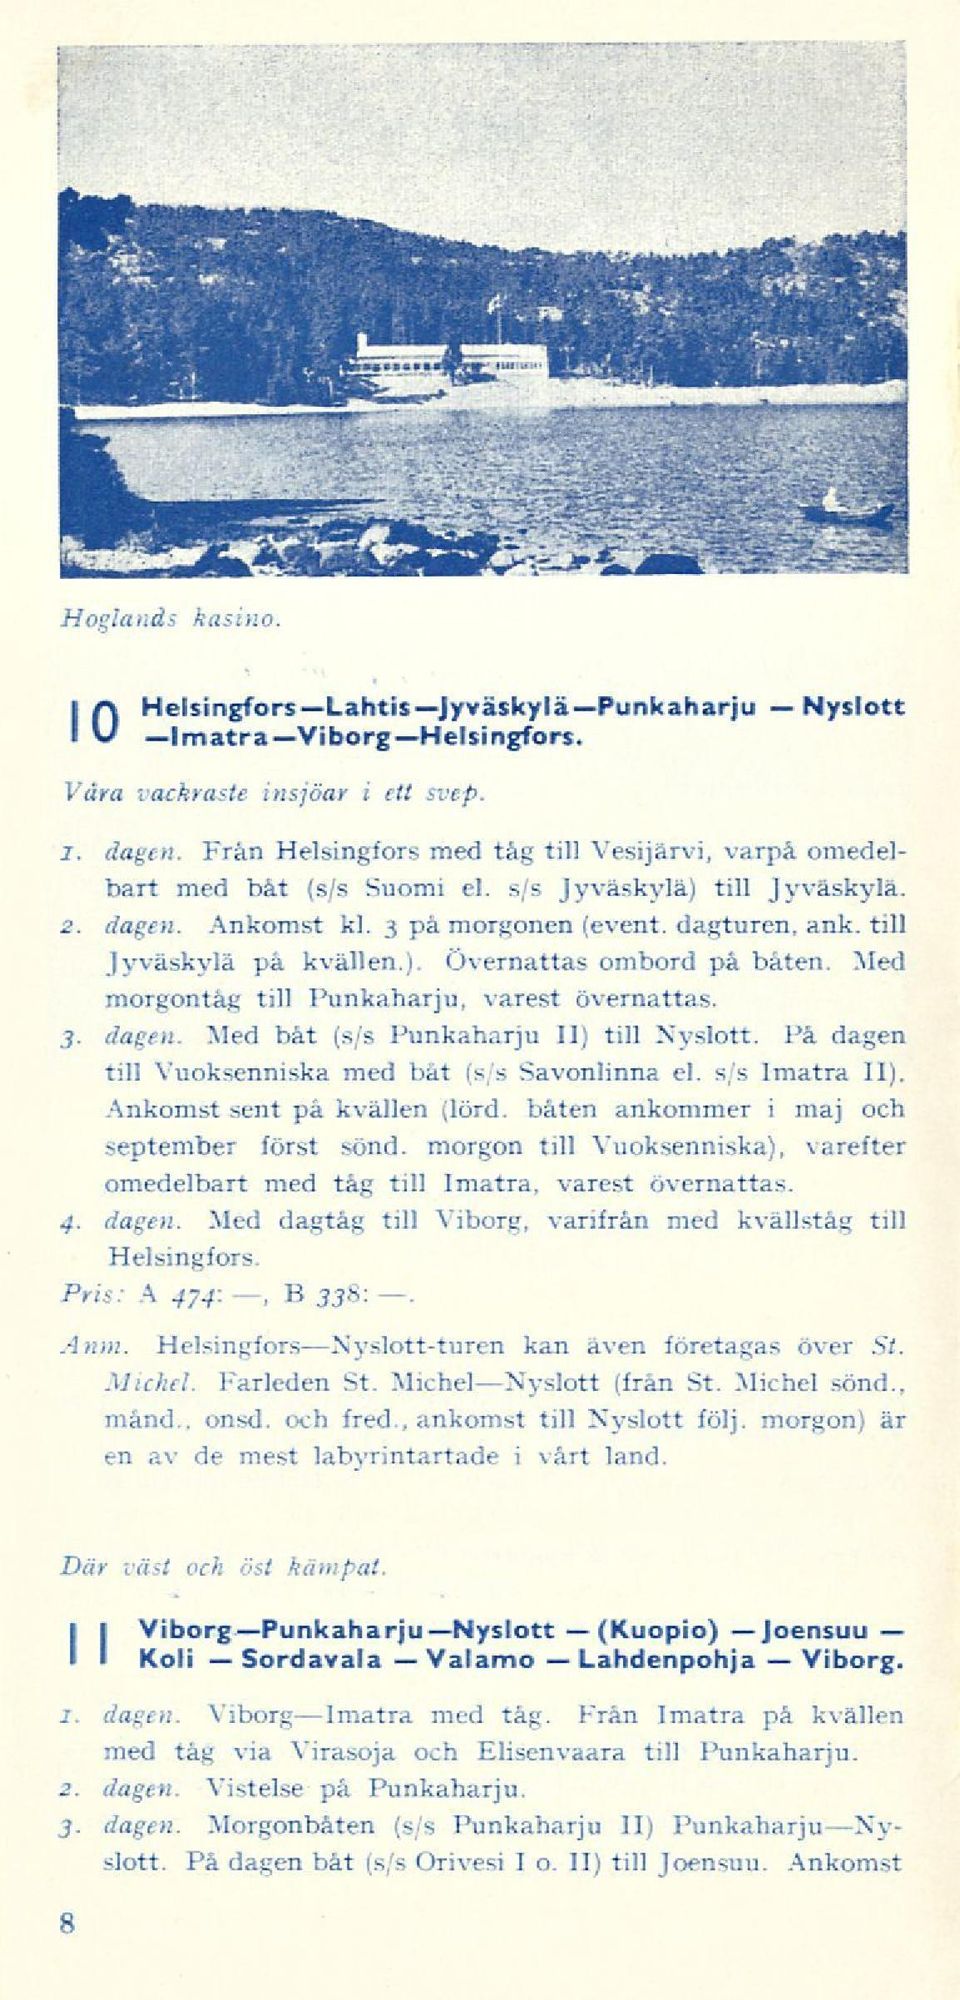 Med morgontåg till Punkaharju, varest övernattas. 3. dagen. Med båt (s/s Punkaharju II) till Nyslott. På dagen till Vuoksenniska med båt (s/s Savonlinna el. s/s Imatra II).